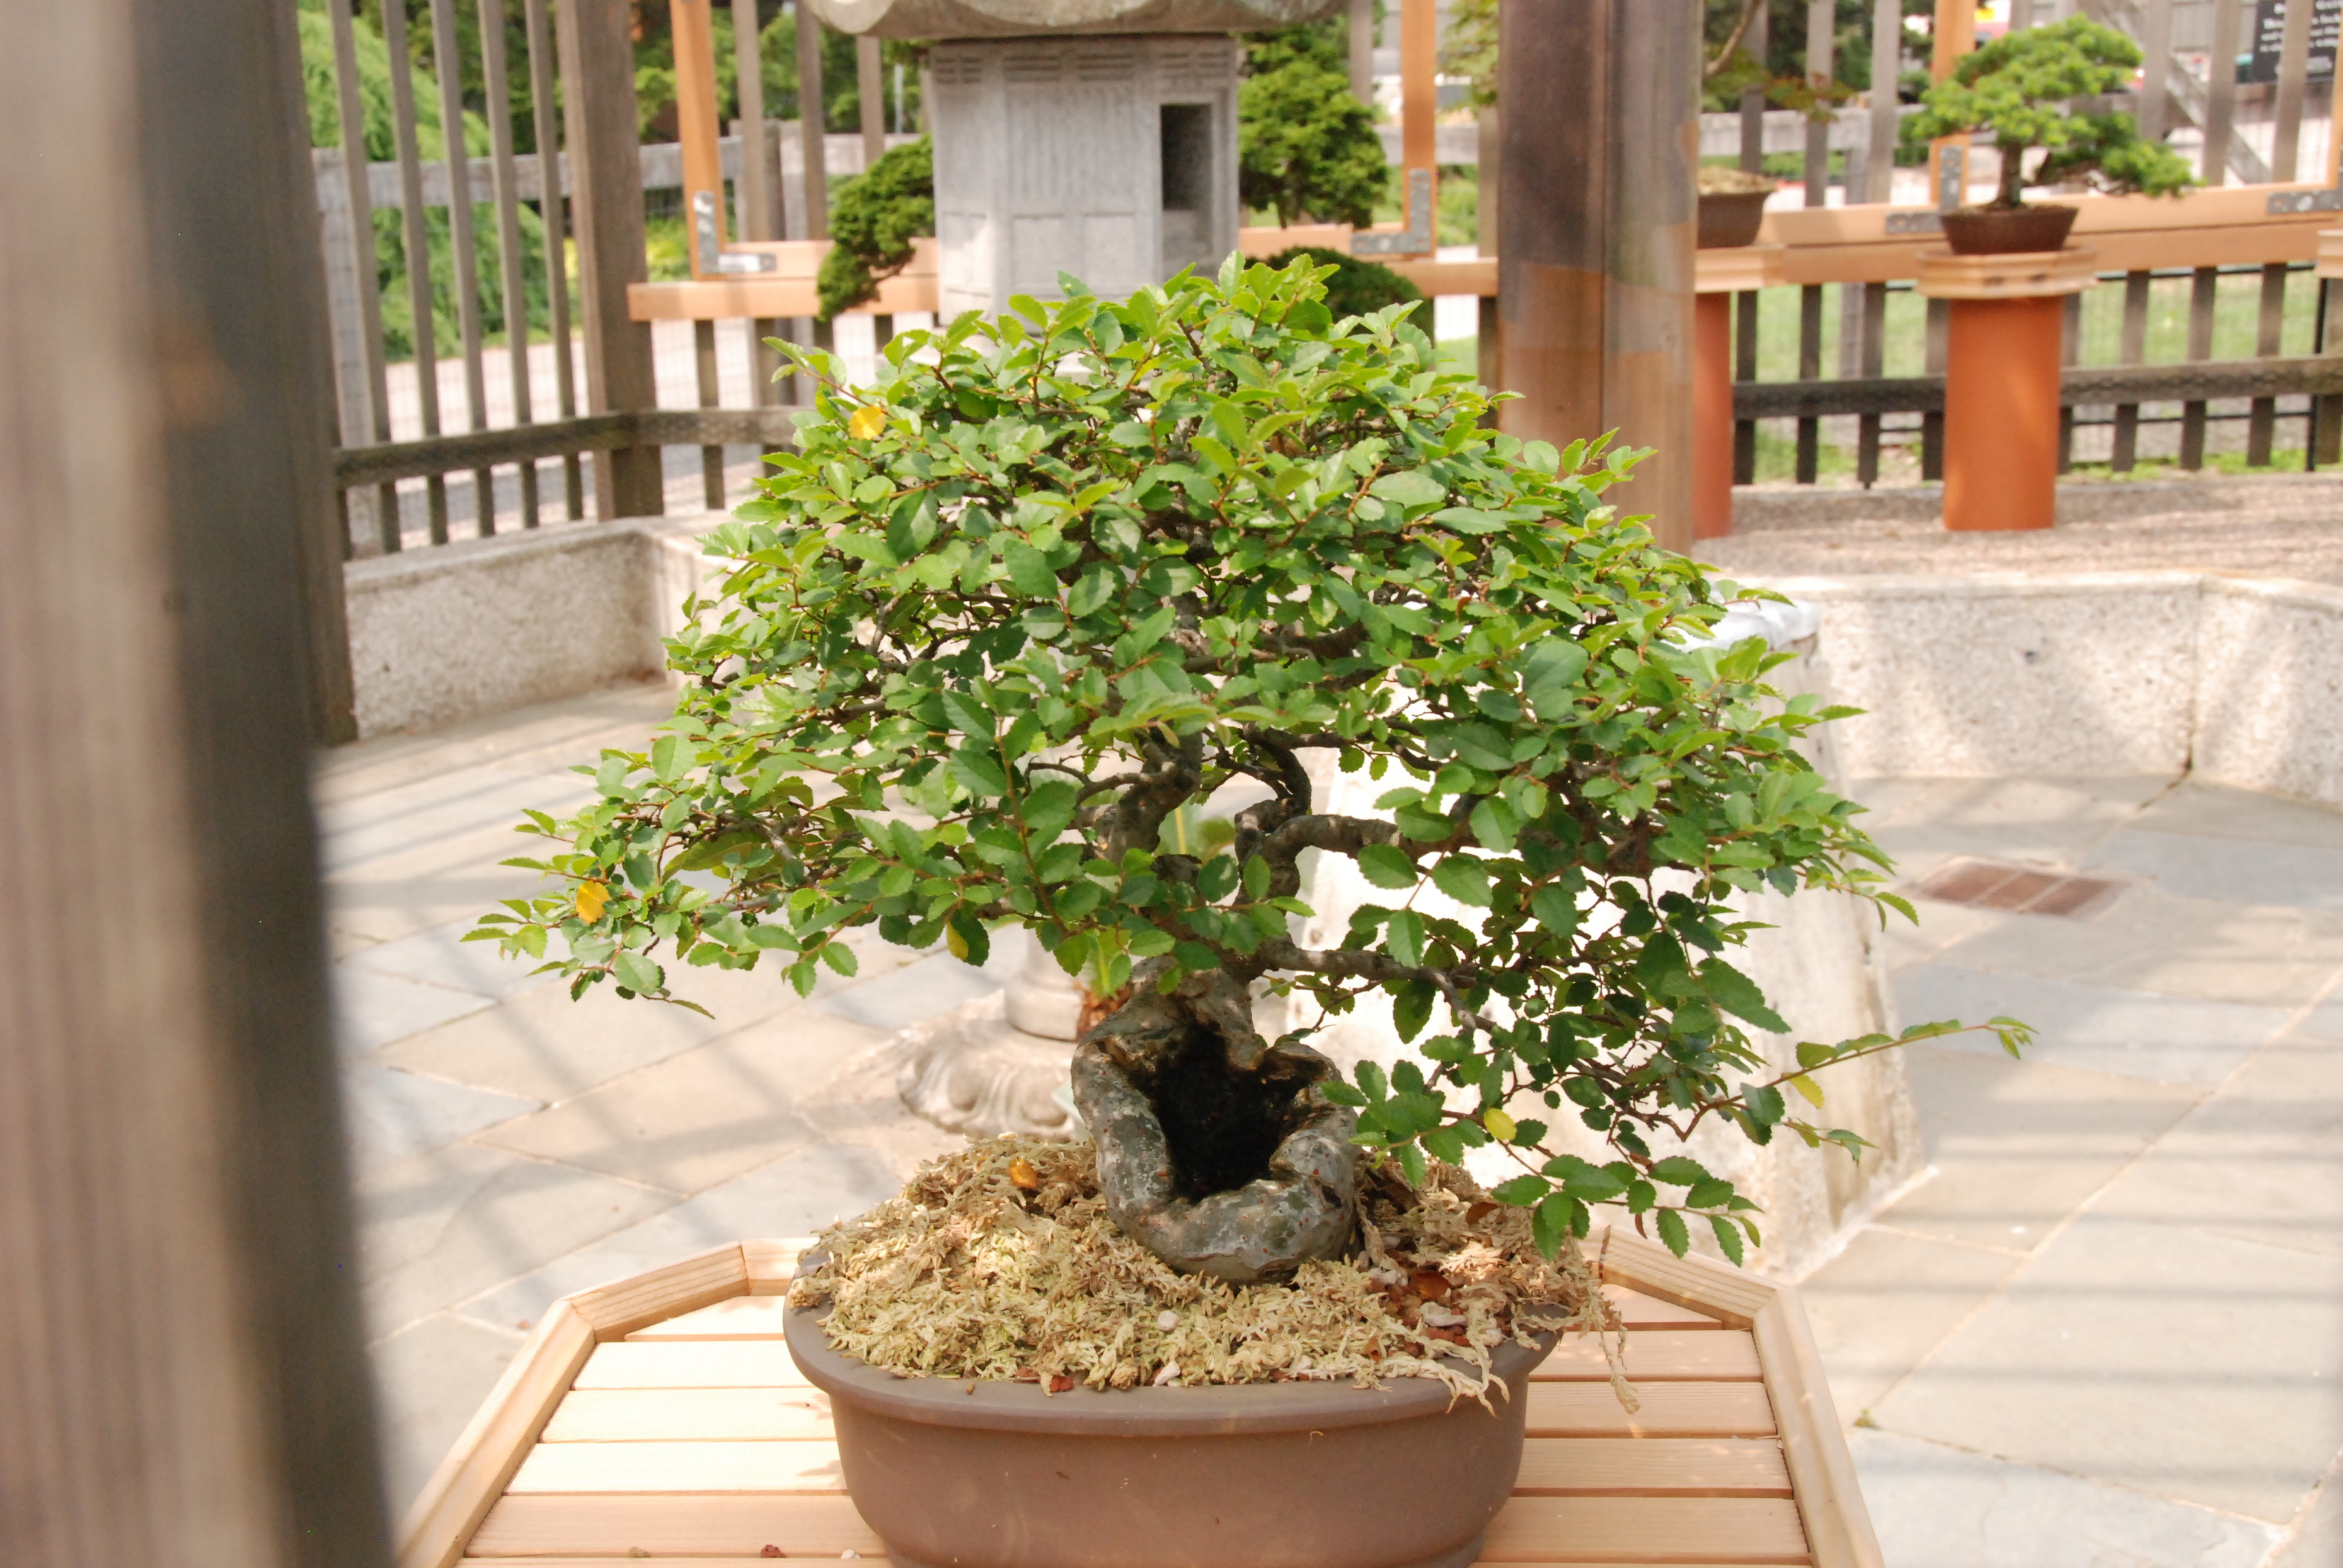 Ez itt a park bonsai-kiállítása, egy nagyon szép kis juharfát fotóztam le, tölgyeket és fenyőket gyakran látni.